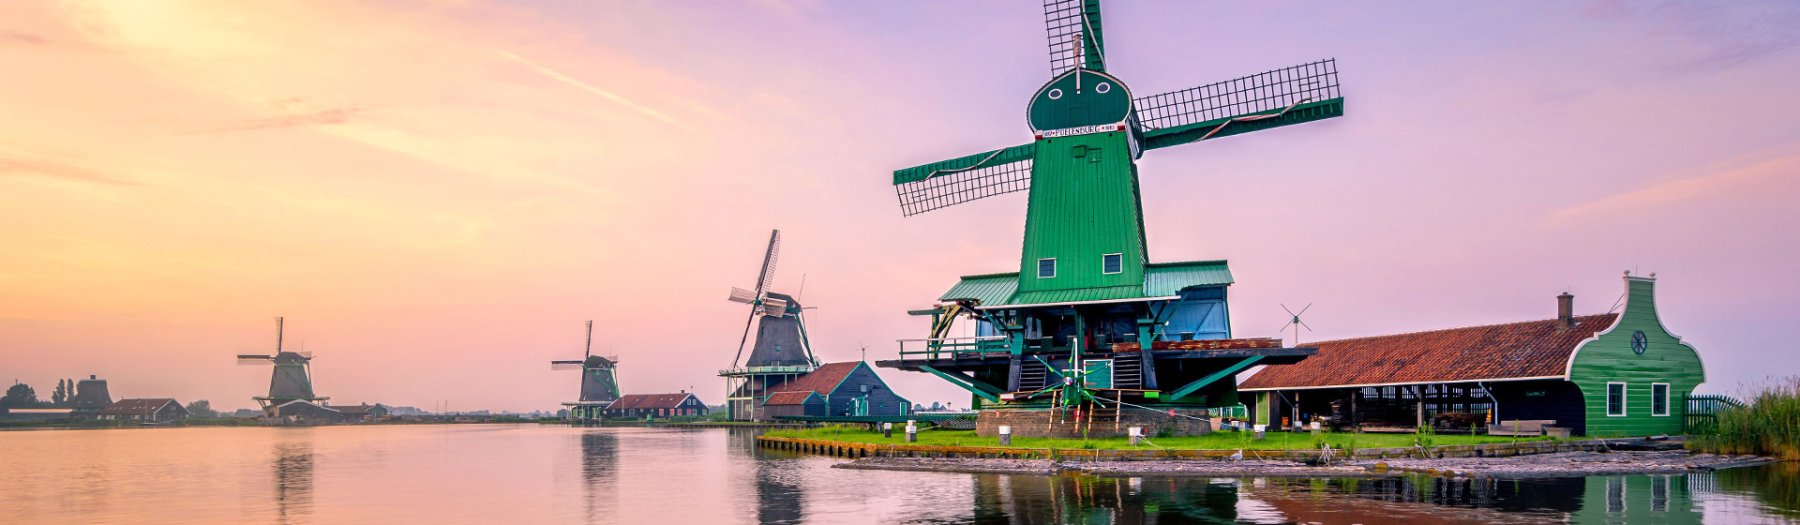 332 schöne Ferienhäuser in Holland warten auf Dich